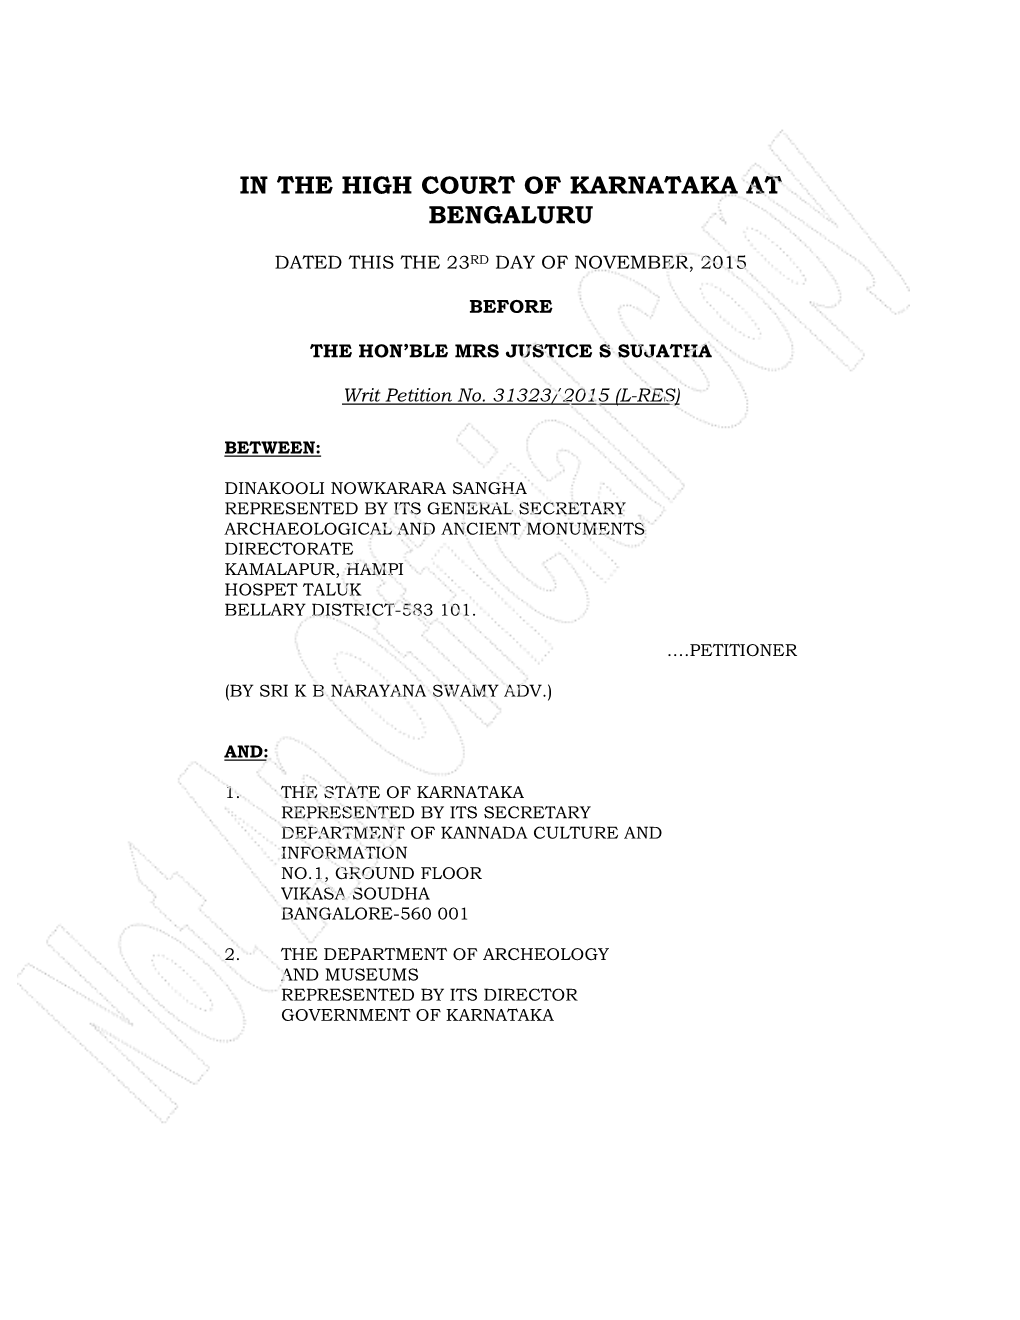 In the High Court of Karnataka at Bengaluru